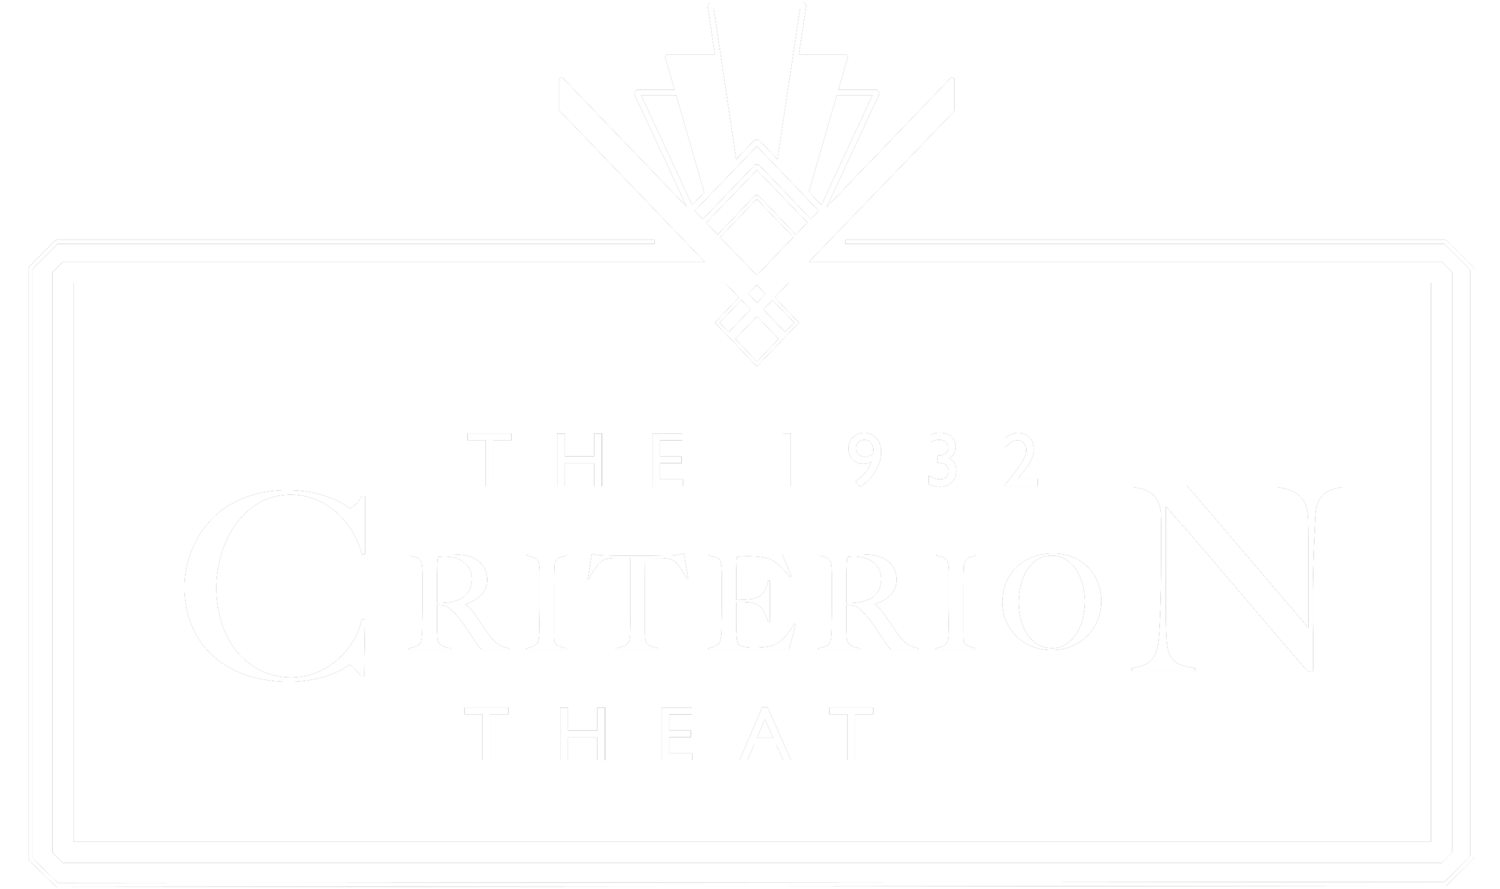 Criterion-Theatre